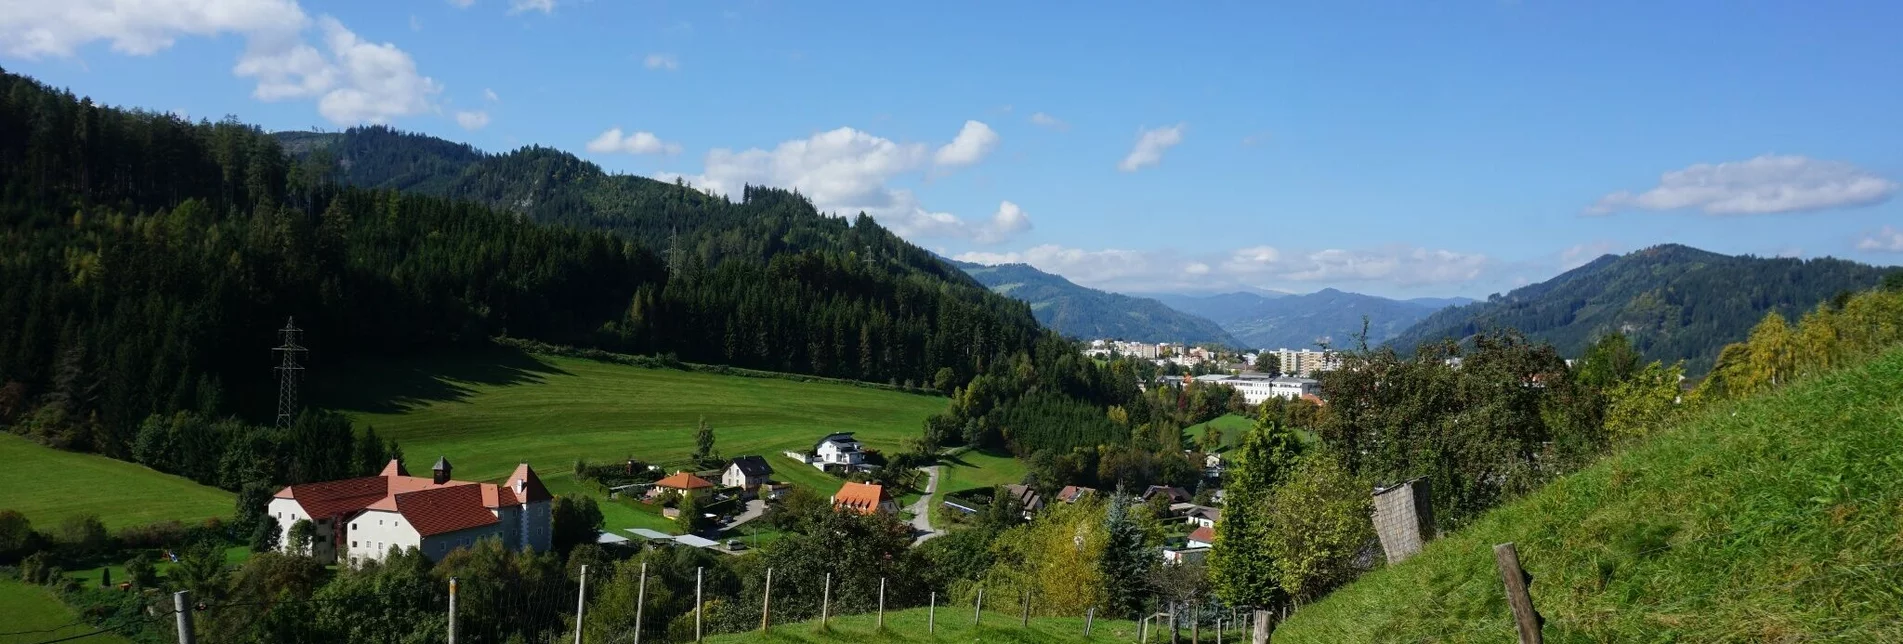 Hiking route Hike around the Liechtensteinberg - Touren-Impression #1 | © Erlebnisregion Murtal